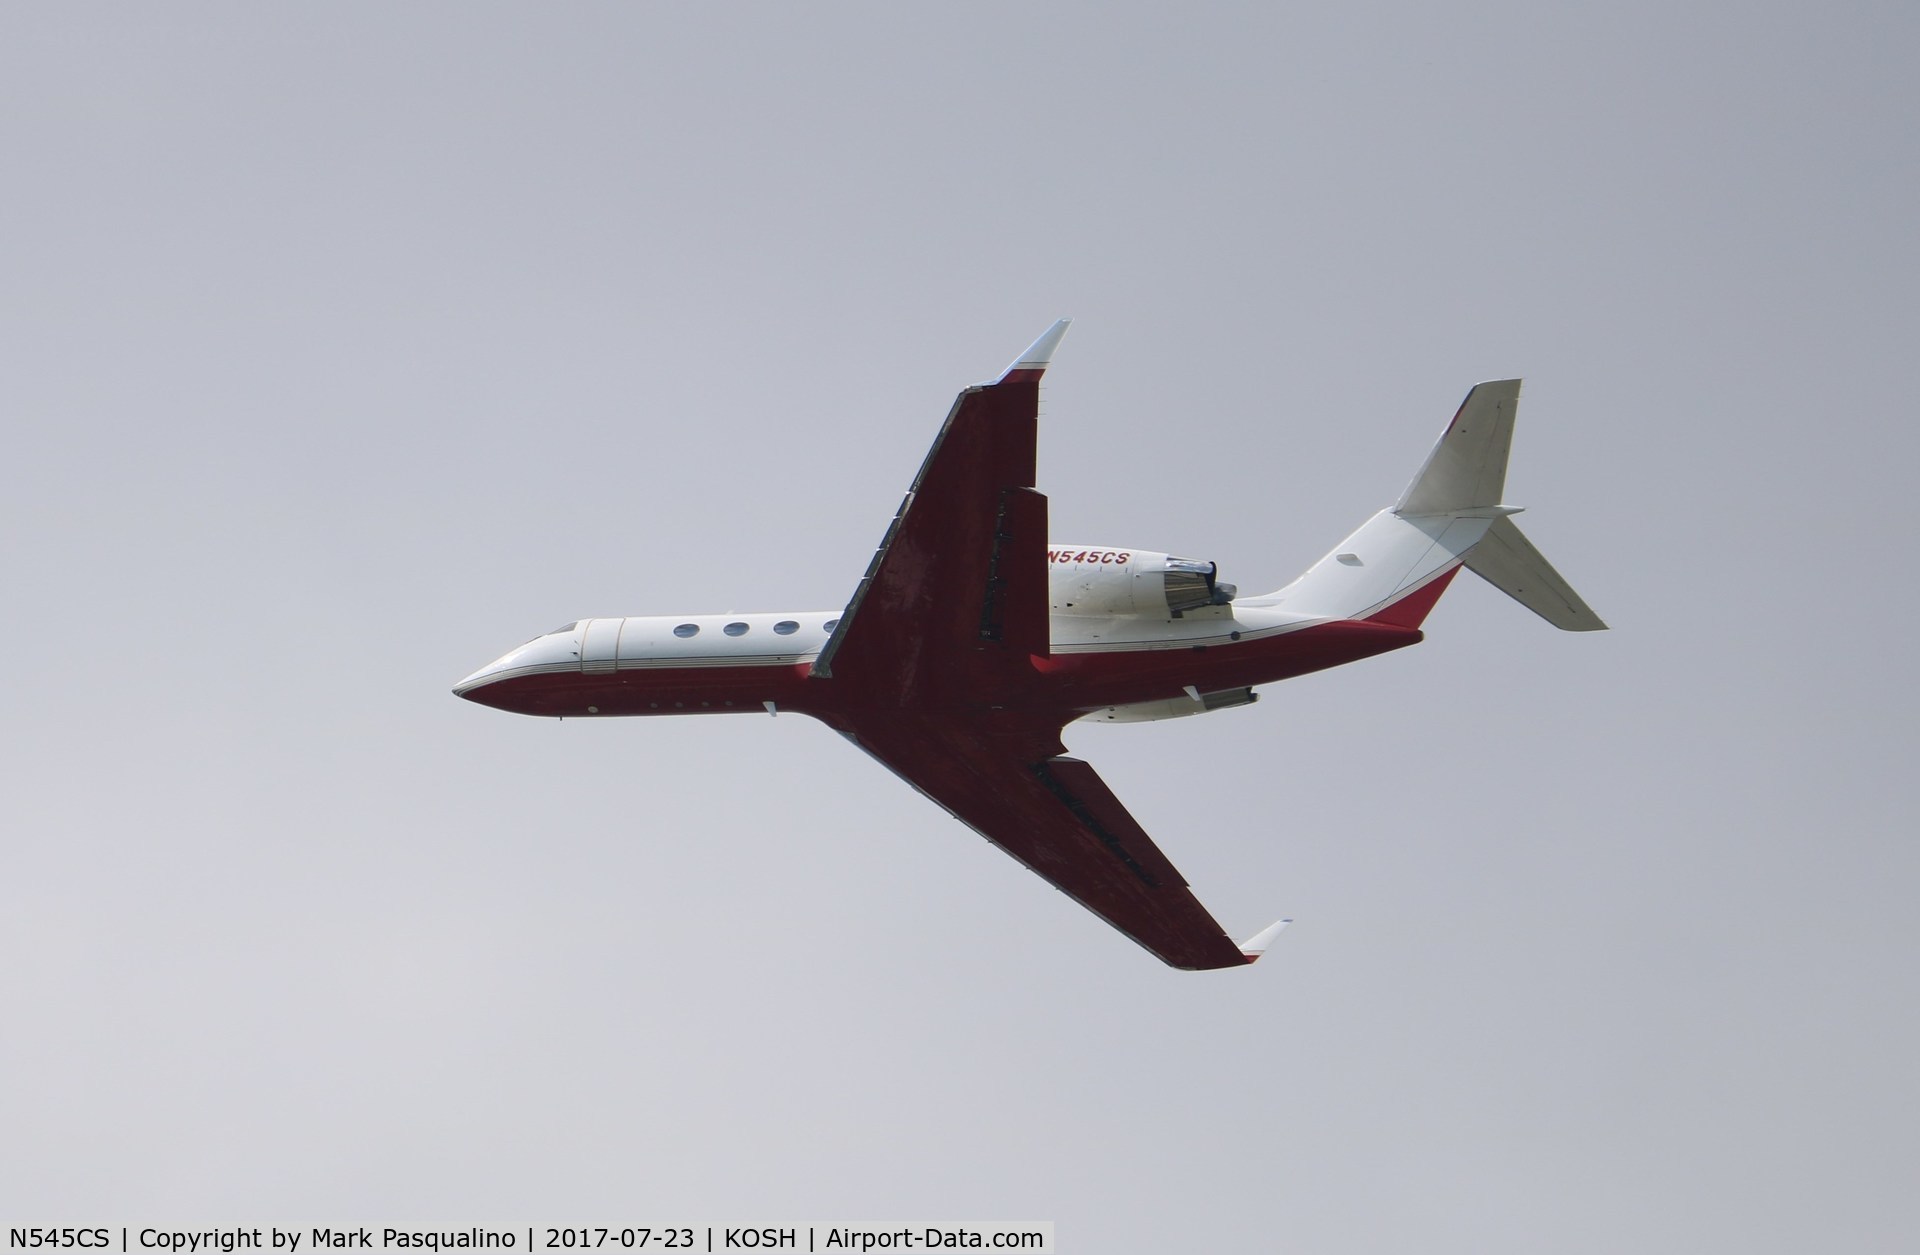 N545CS, 1999 Gulfstream Aerospace G-IV C/N 1361, Gulfstream G-IV